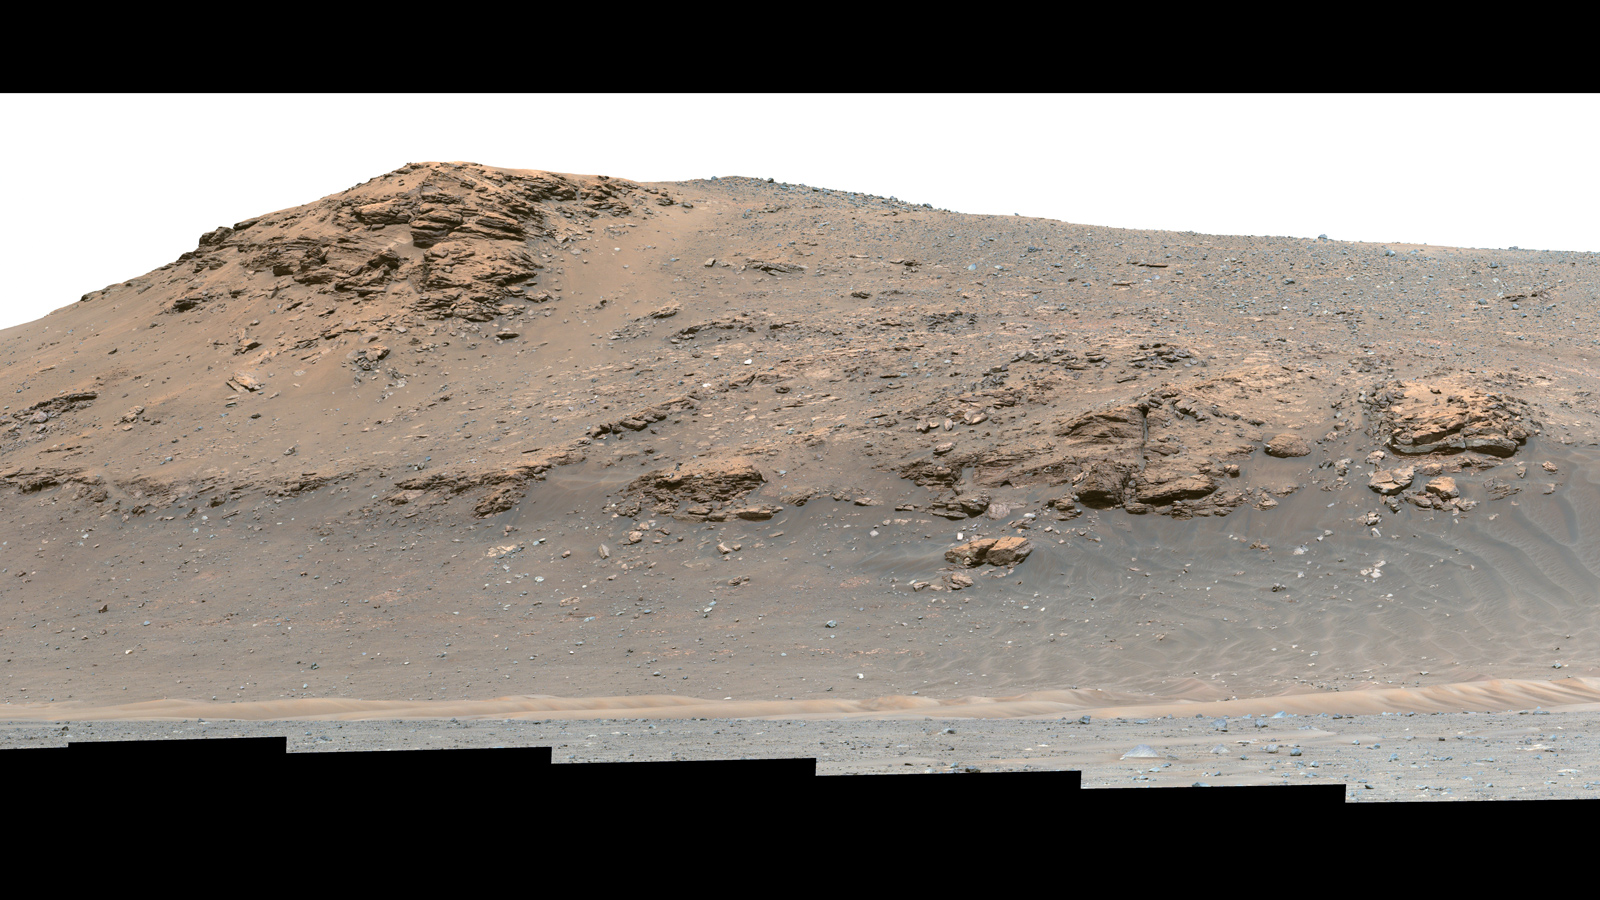 slide 5 - a color image of Mars